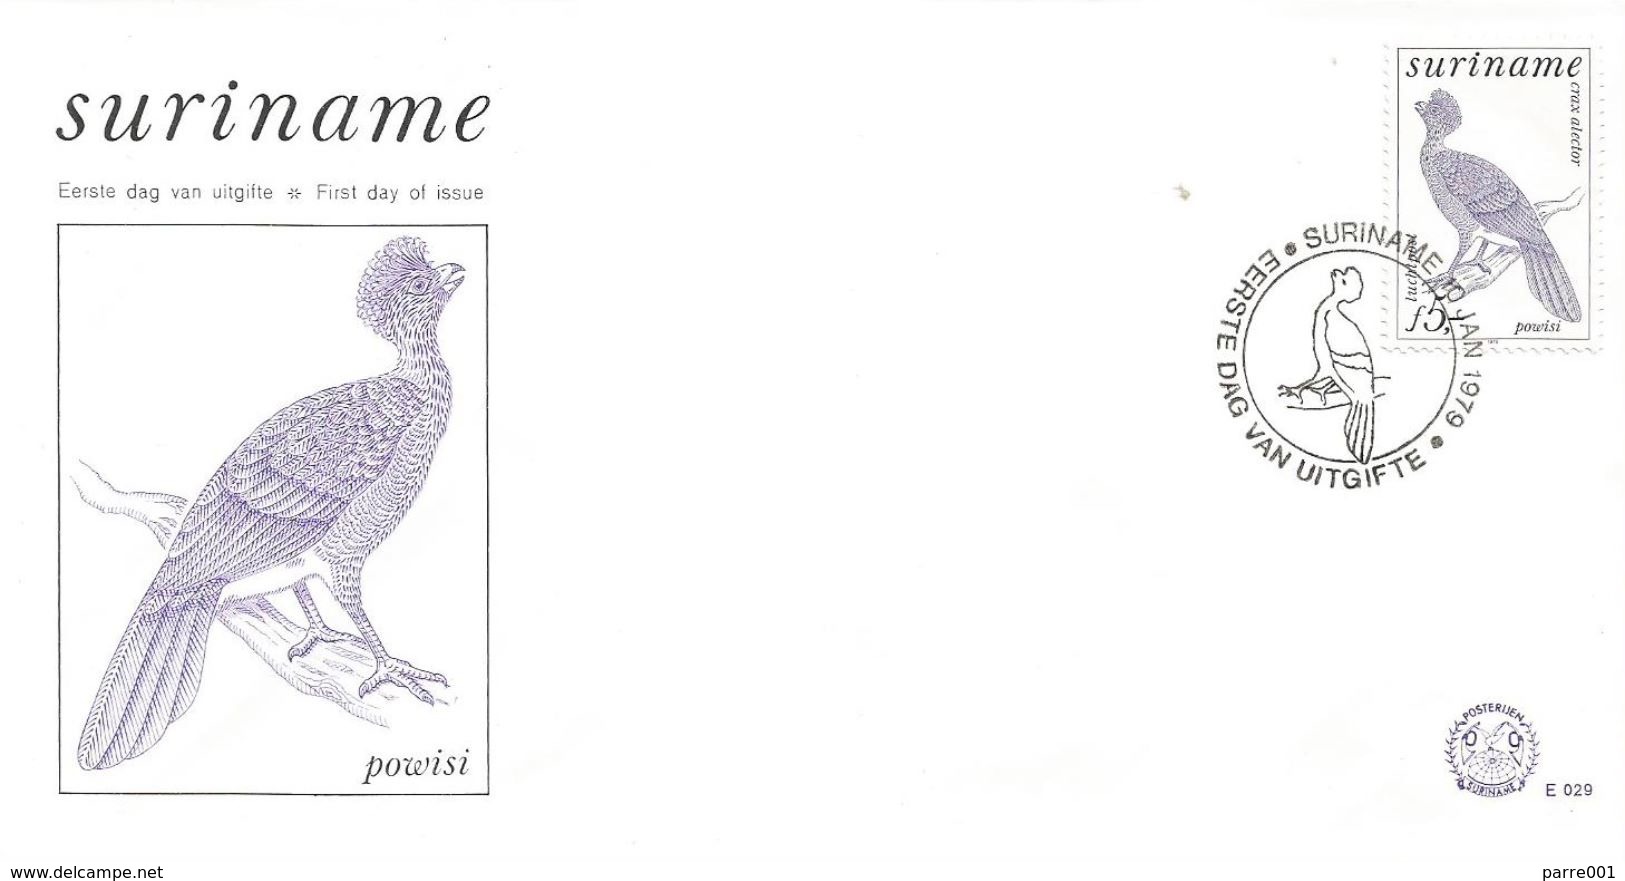 Surinam Suriname 1979 Paramaribo Crax Alector Bird FDC Cover - Cuco, Cuclillos